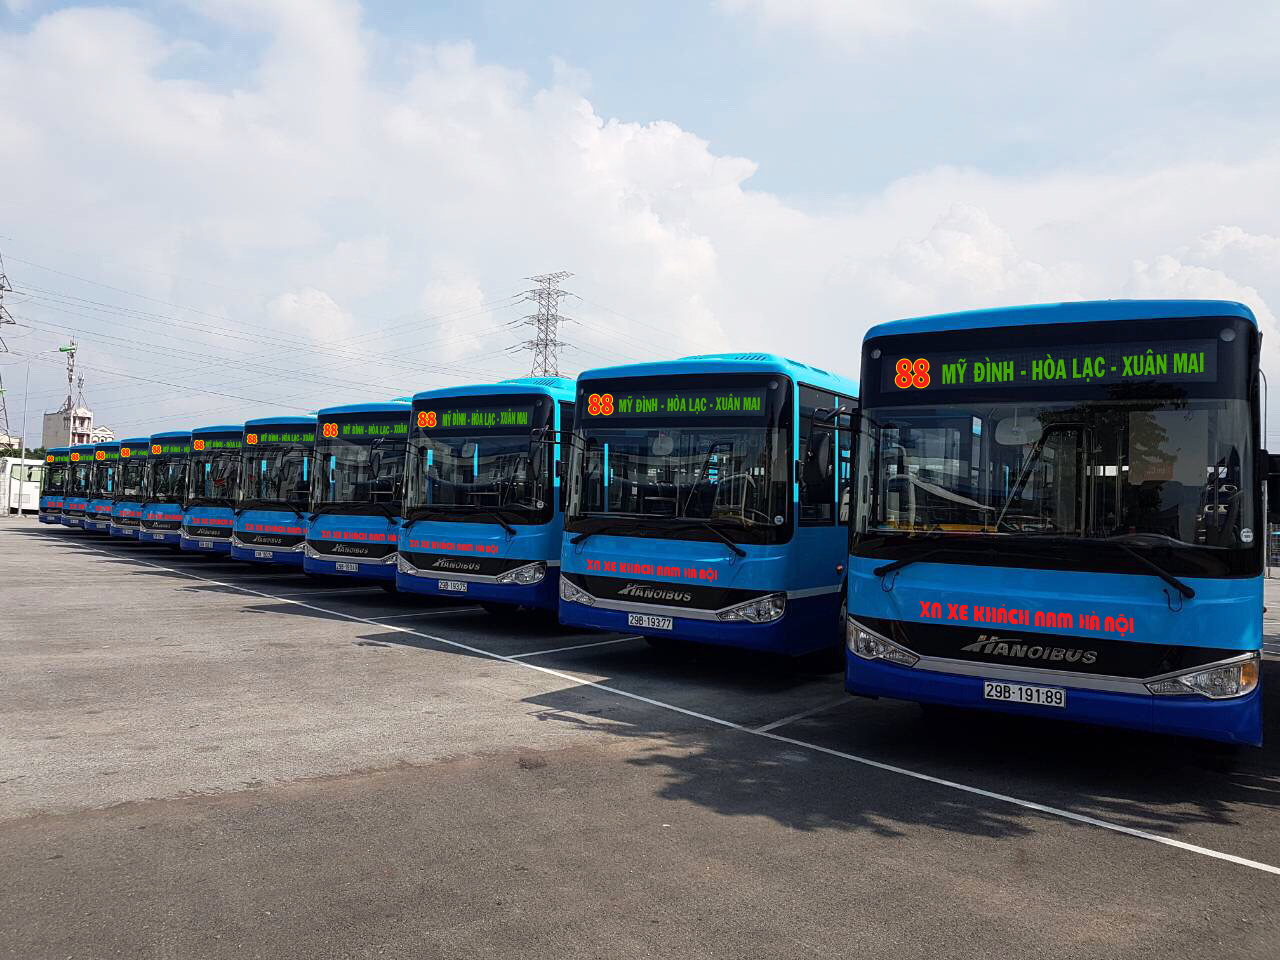 Thay xe mới tuyến buýt 88: Bến xe Mỹ Đình – Hòa Lạc – Xuân Mai